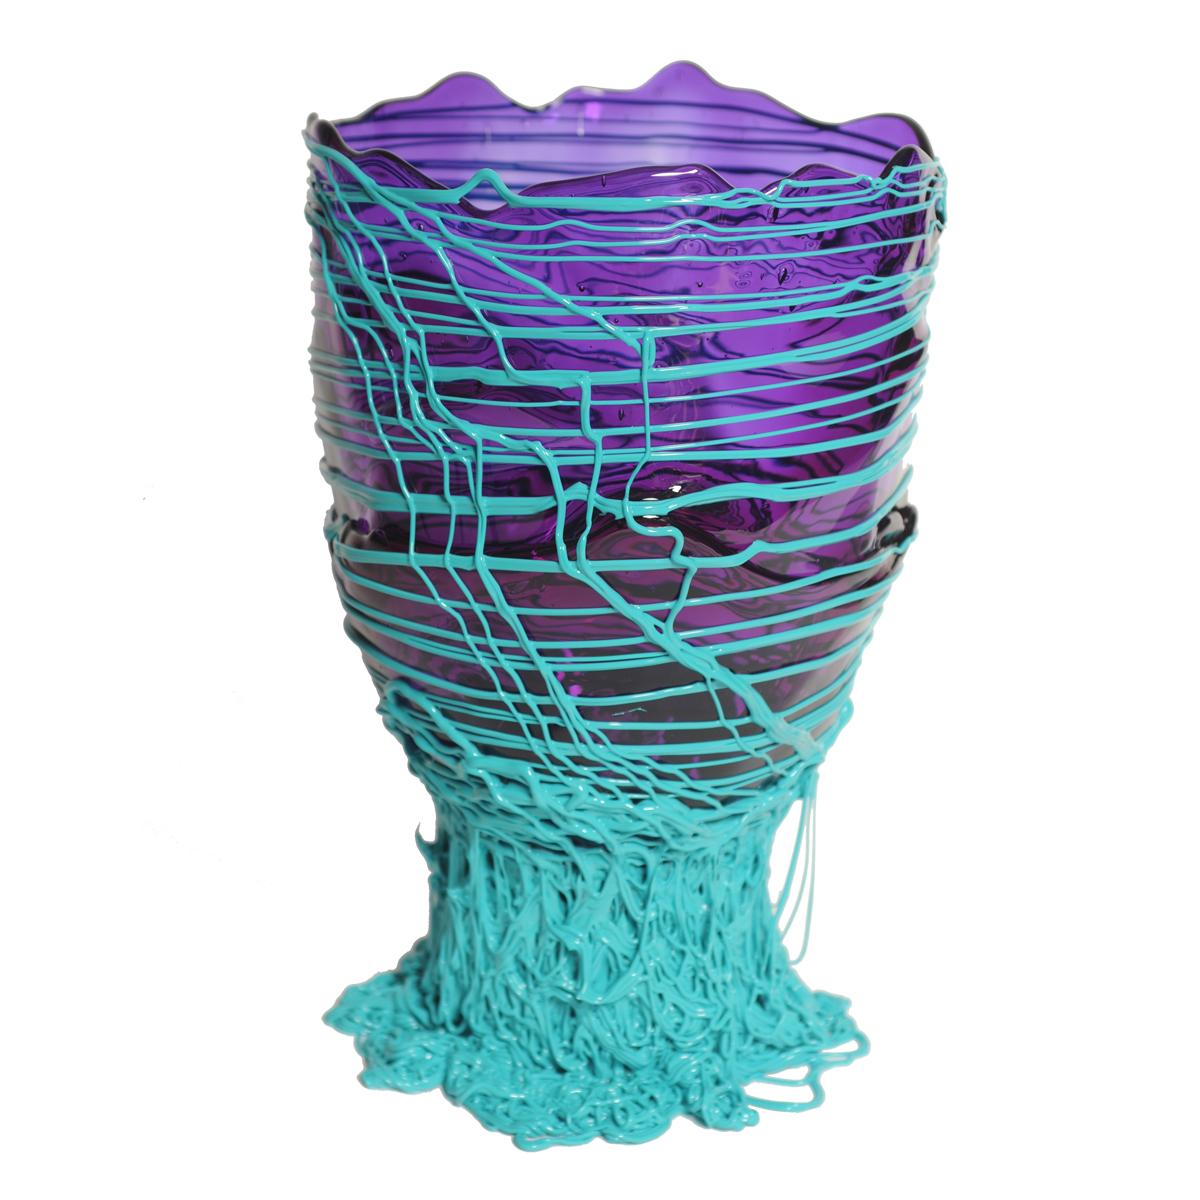 Vase spaghetti, violet, turquoise.

Vase en résine souple conçu par Gaetano Pesce en 1995 pour la collection Fish Design.

Mesures : XL - ø 30cm x H 56cm

Autres tailles disponibles.

Couleurs : violet, turquoise.
Vase en résine souple